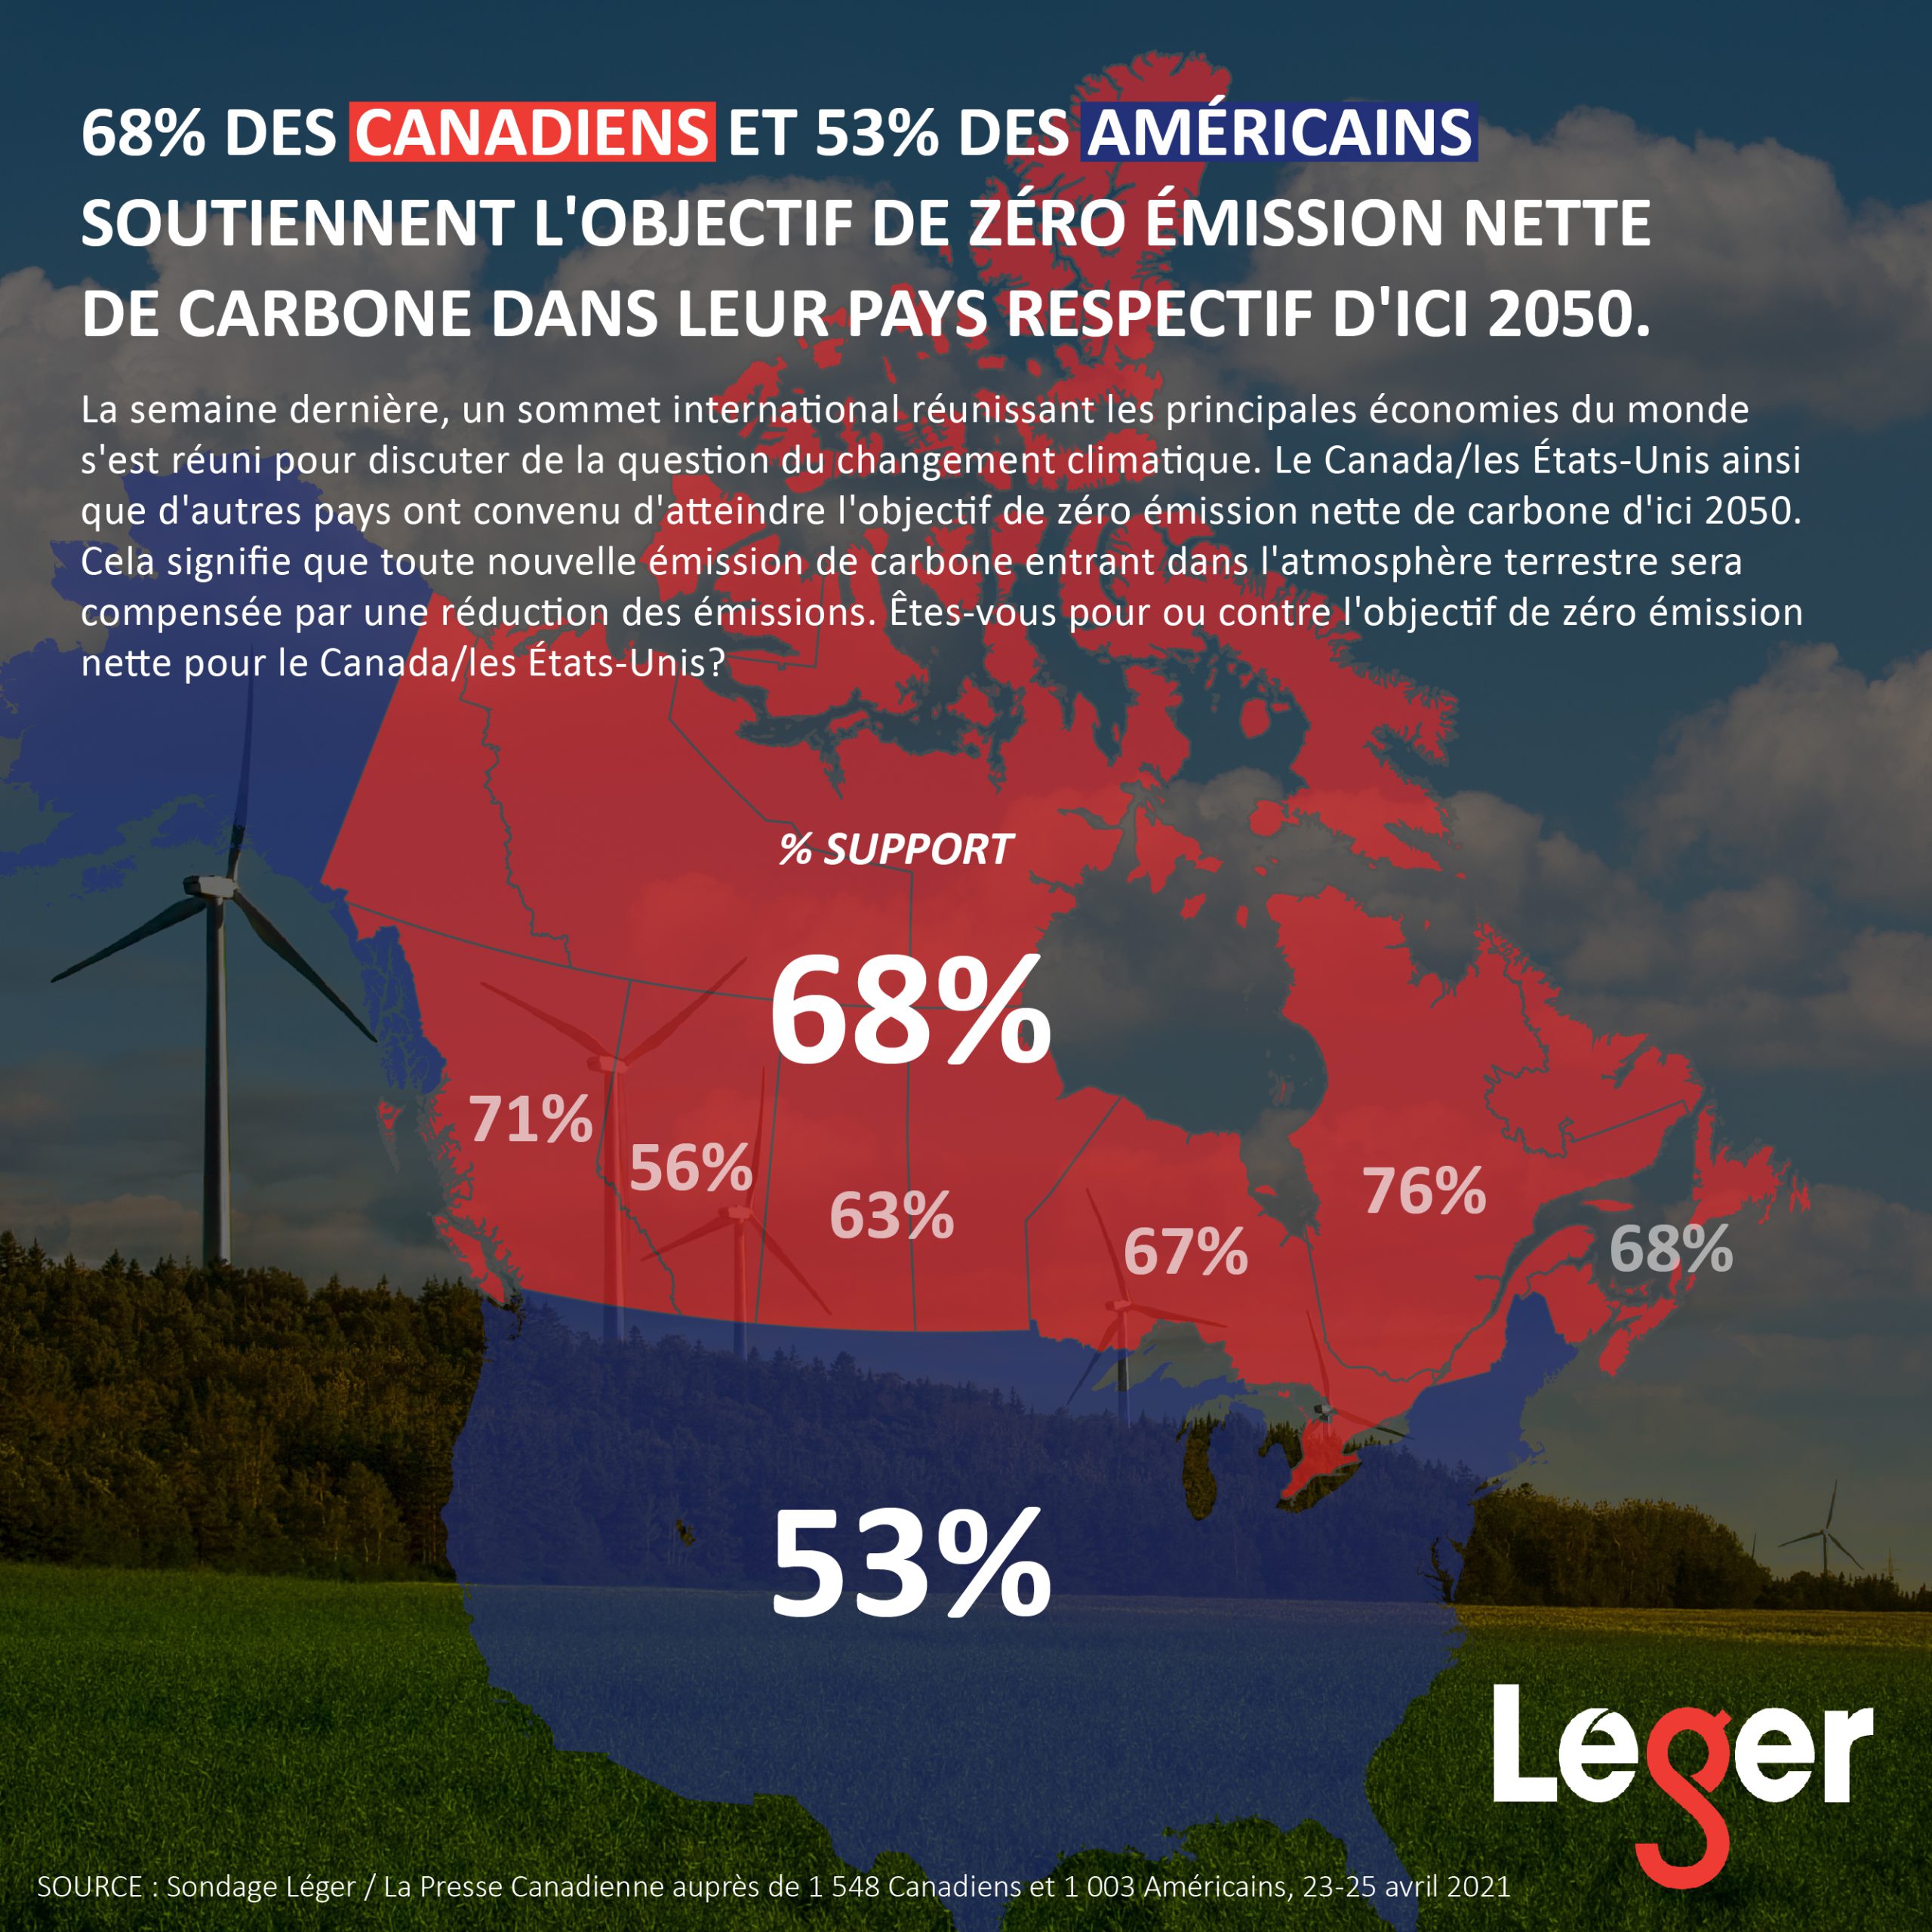 68% des Canadiens et 53% des Américains soutiennent l'objectif de zéro émission nette de carbone dans leur pays respectif d'ici 2050.